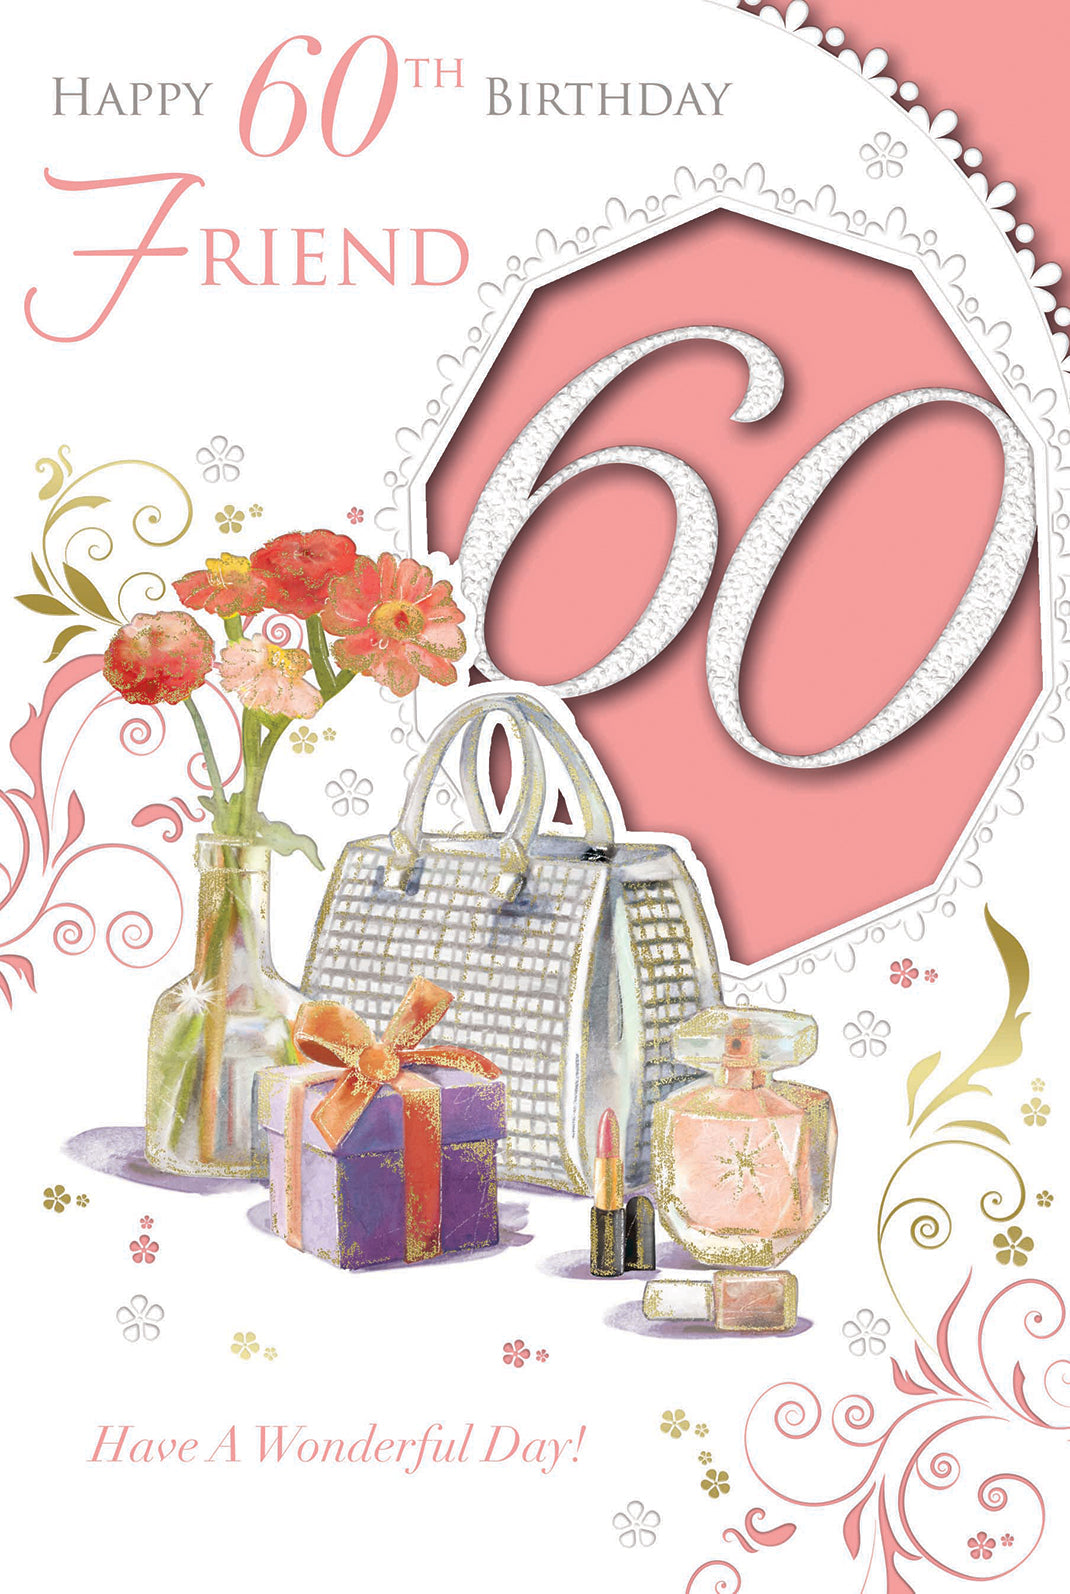 Happy 60th Birthday Wonderful Design Female Friend Celebrity Style Card